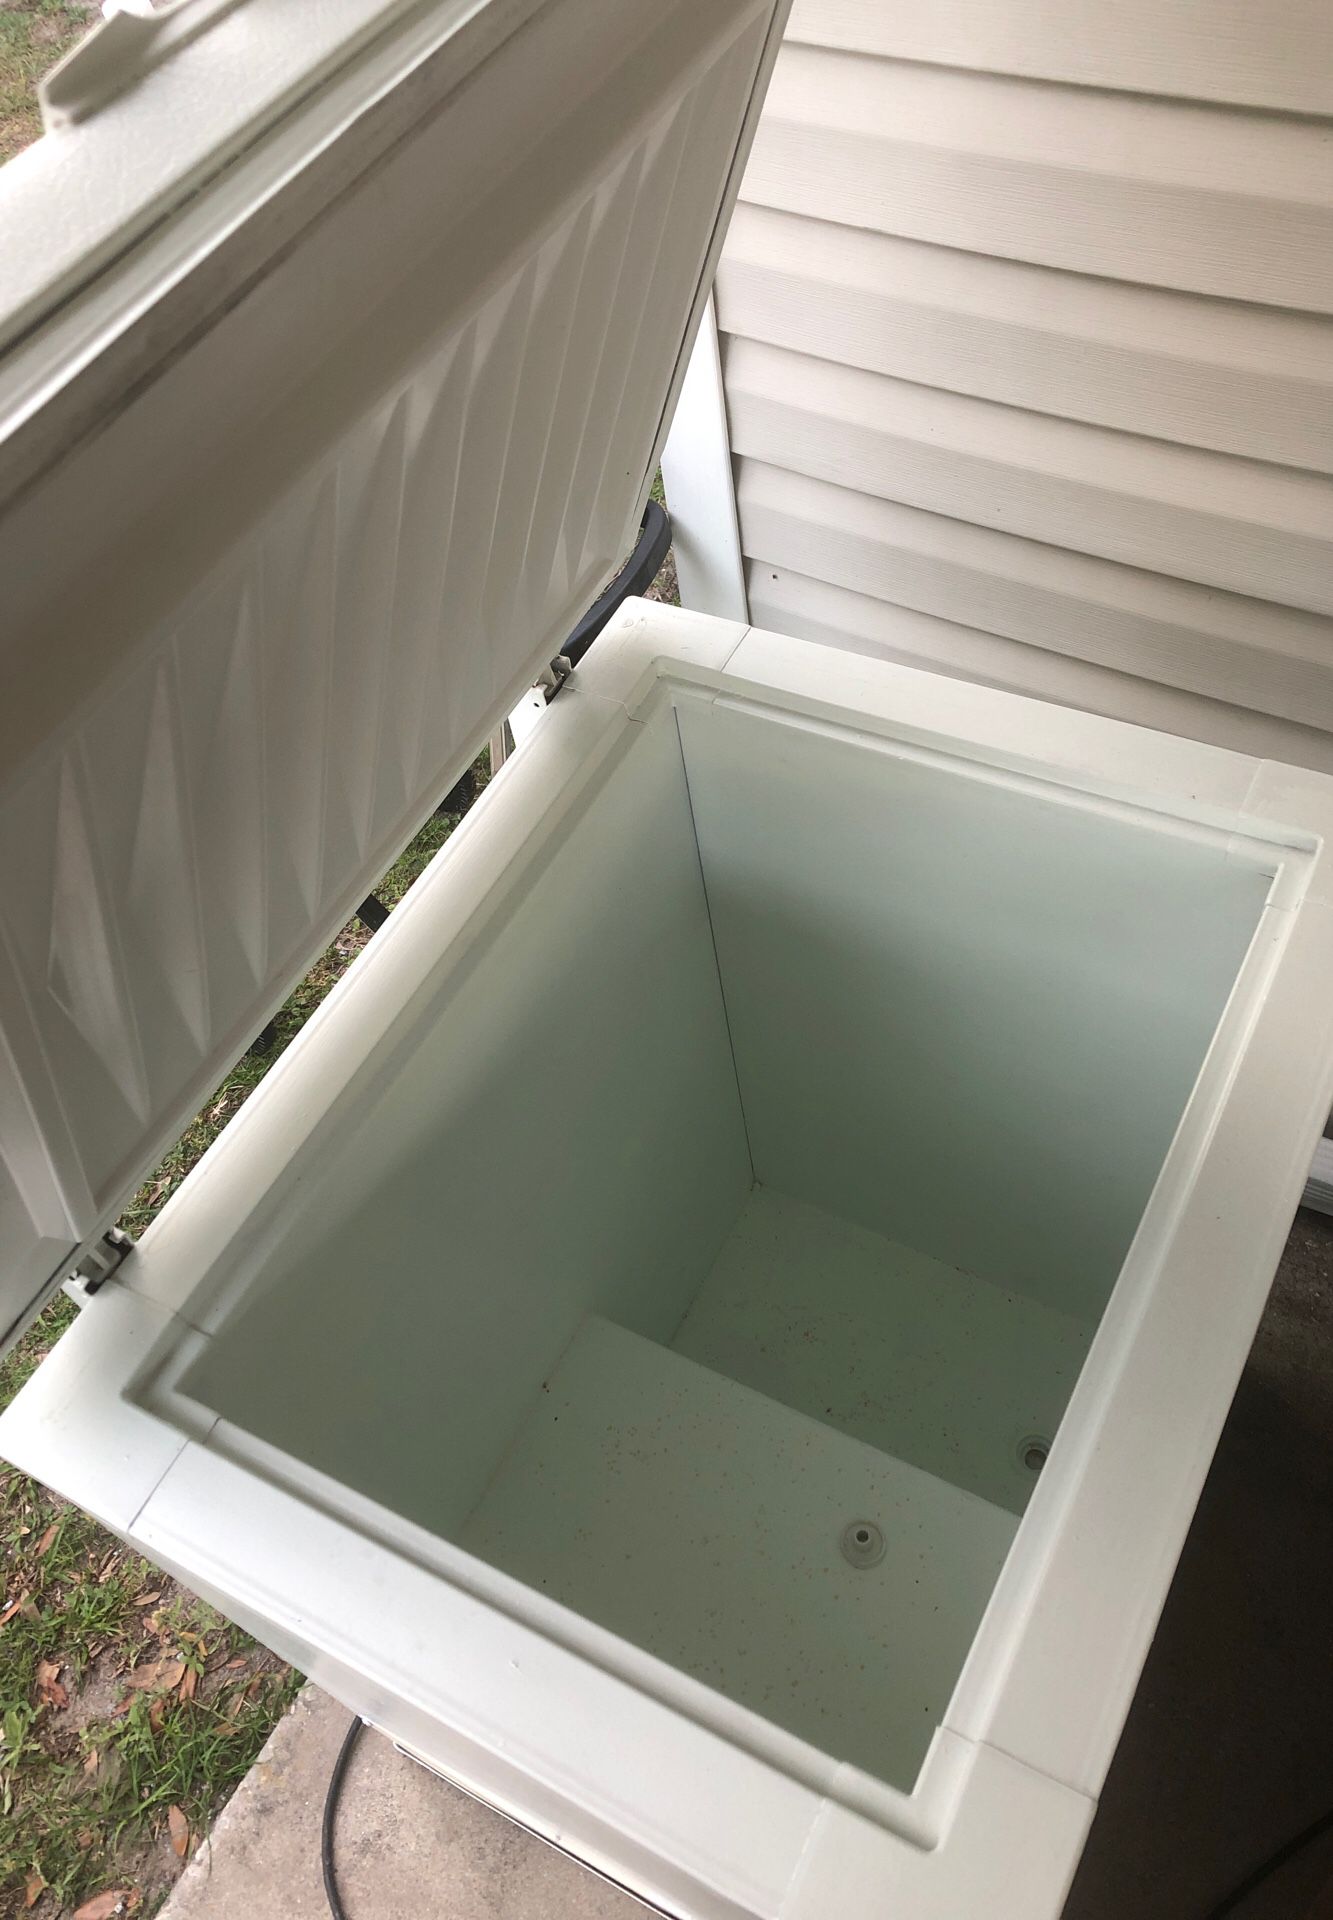 5 cubic ft chest freezer